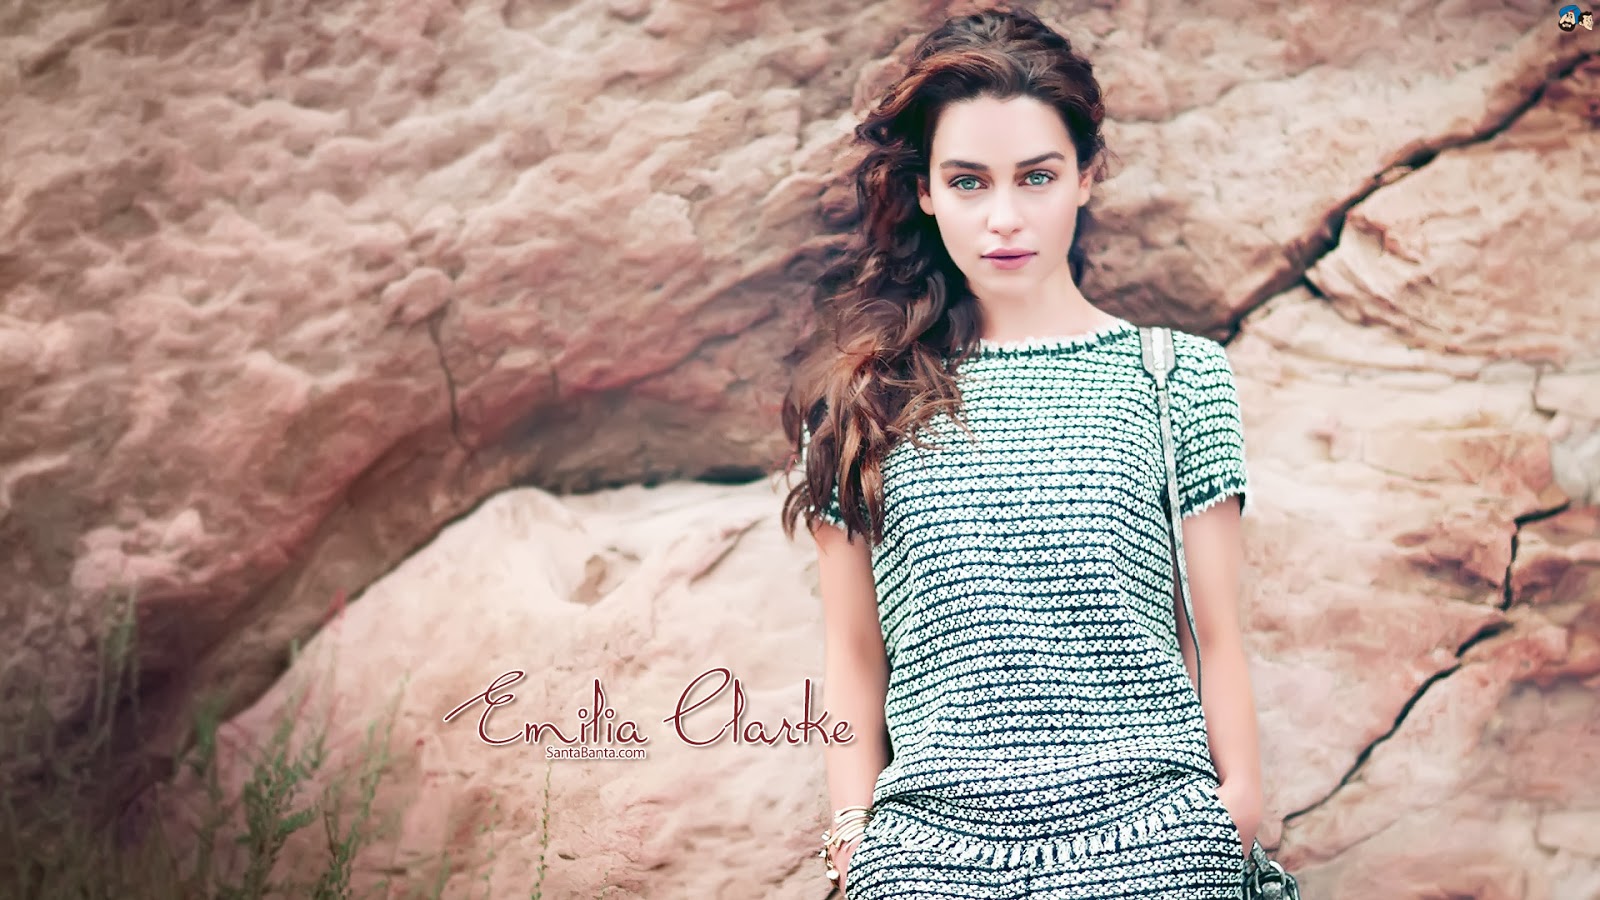 emilia clarke sfondi hd,capi di abbigliamento,bellezza,modella,moda,vestito